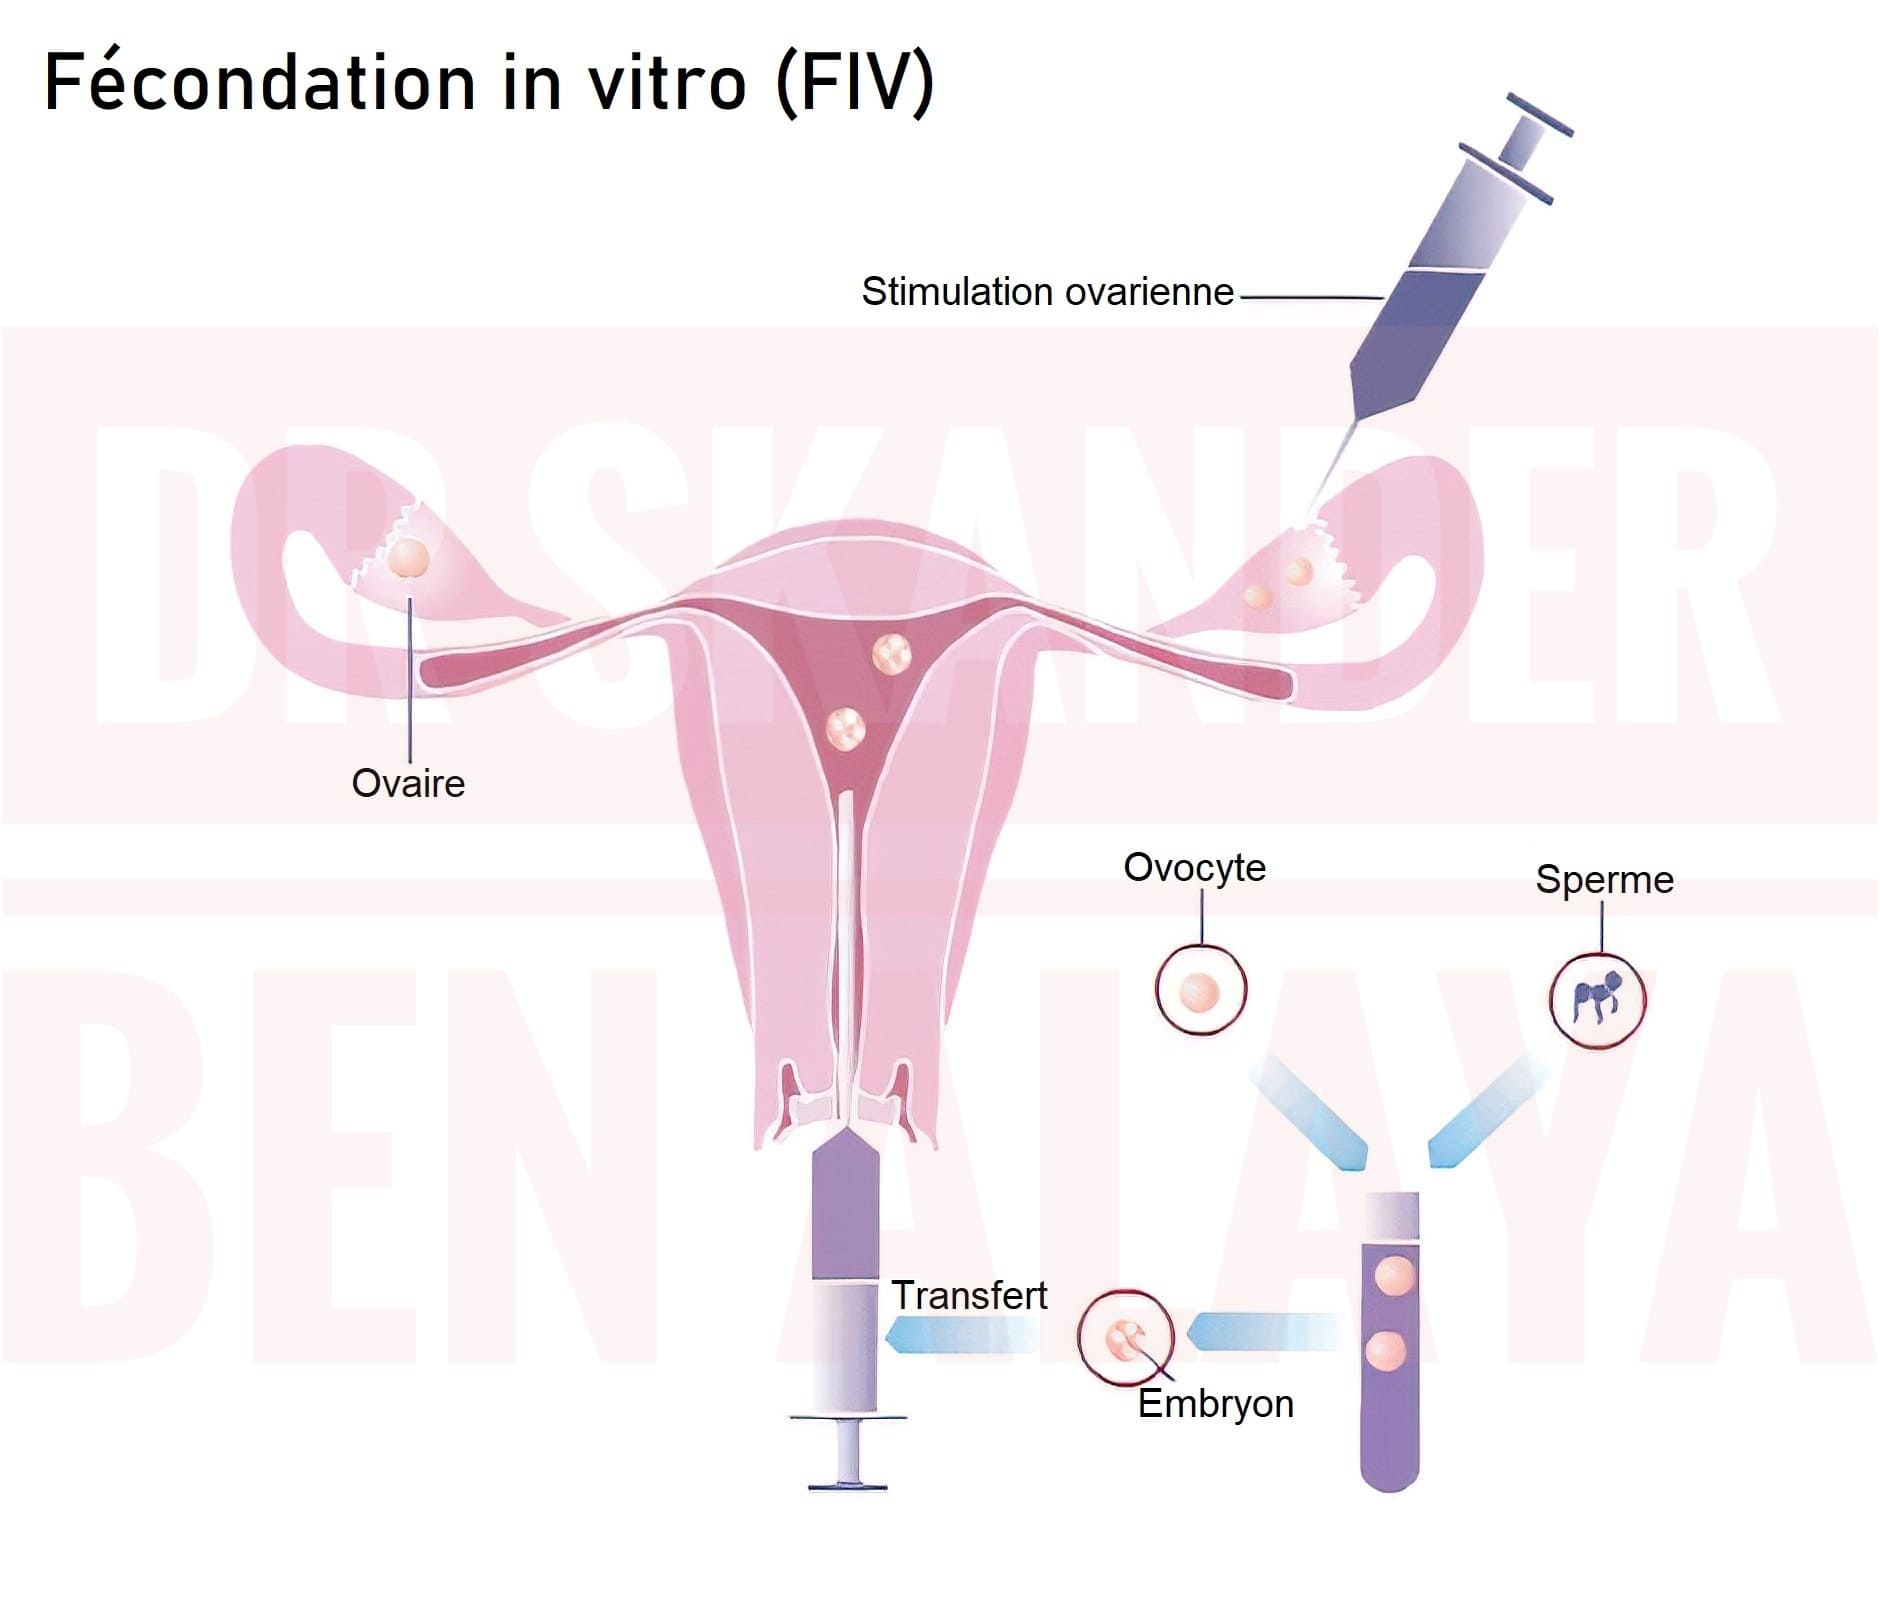 La fécondation in vitro, encore appelée FIV, est une technique de PMA.